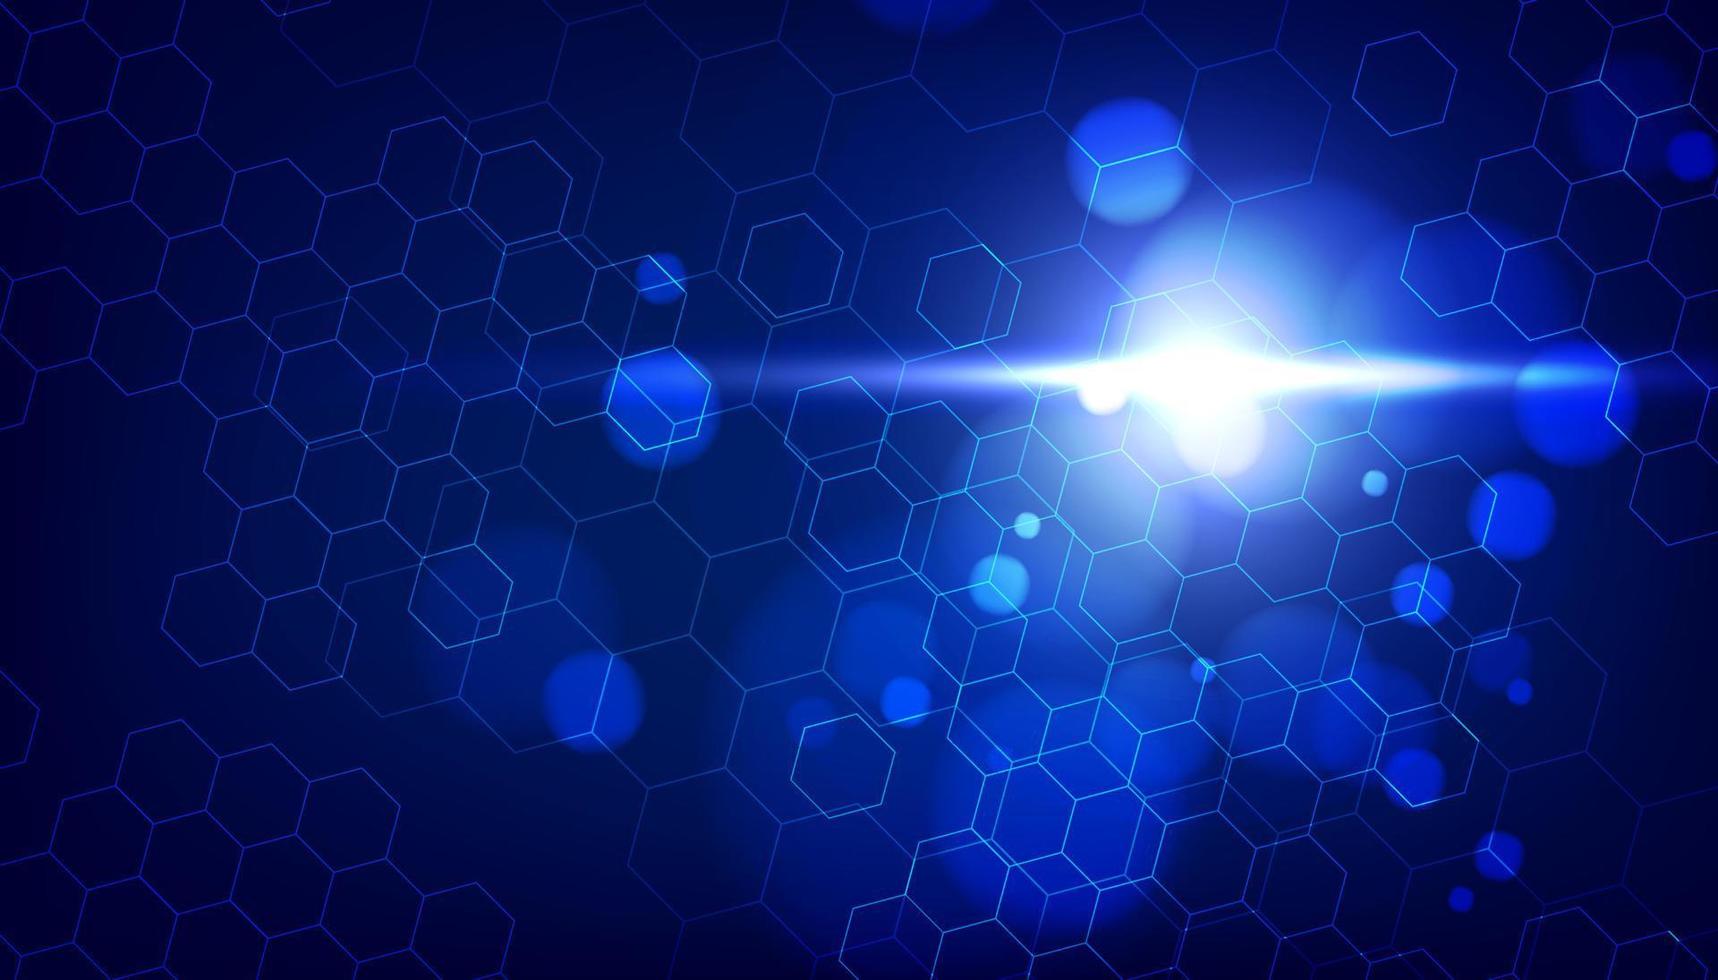 abstrakt blå hexagon mönster bakgrund för ett högteknologiskt kommunikationskoncept. vektor illustration